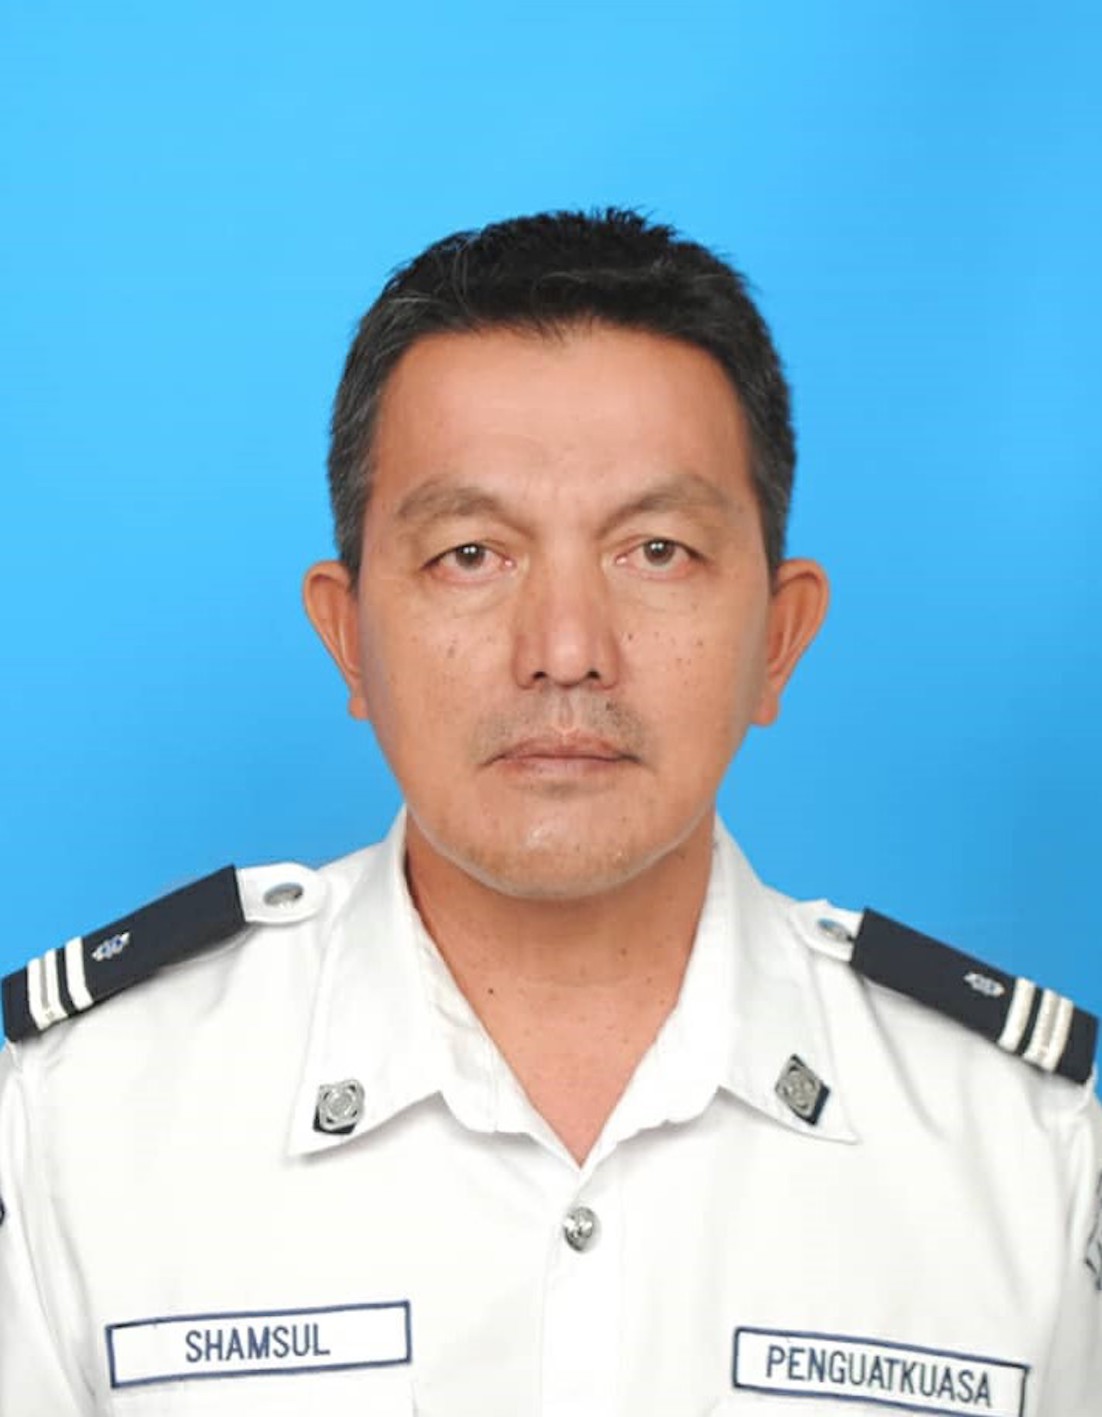 Mohd Shamsul Bin Abdul Han